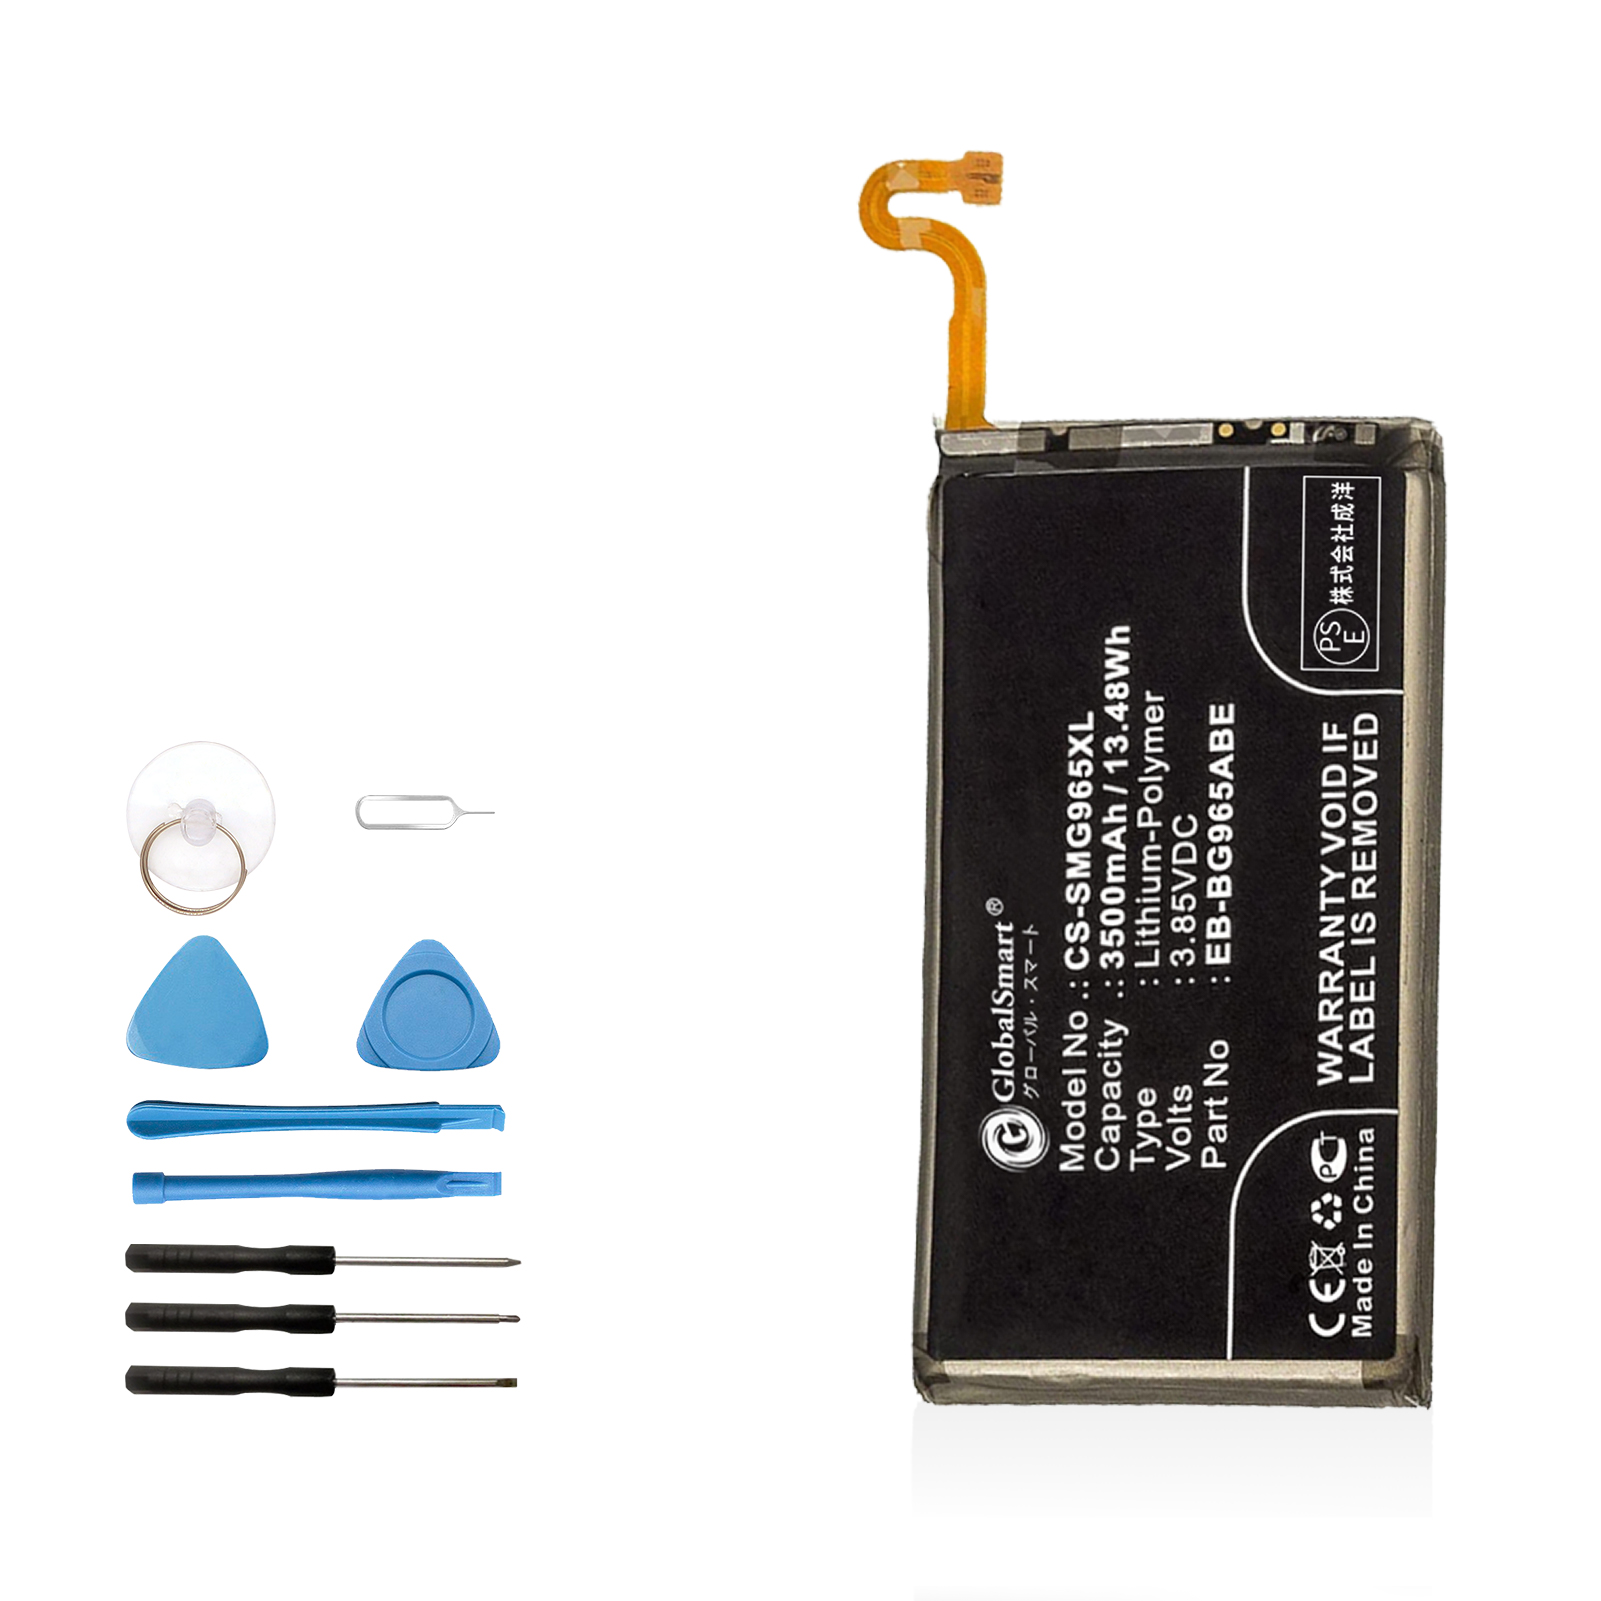 新品 SAMSUNG SGH-N943  交換電池パック 3500mAh 3.85V PSE認証済 1年保証 交換用キット 大容量バッテリー LG23EQ